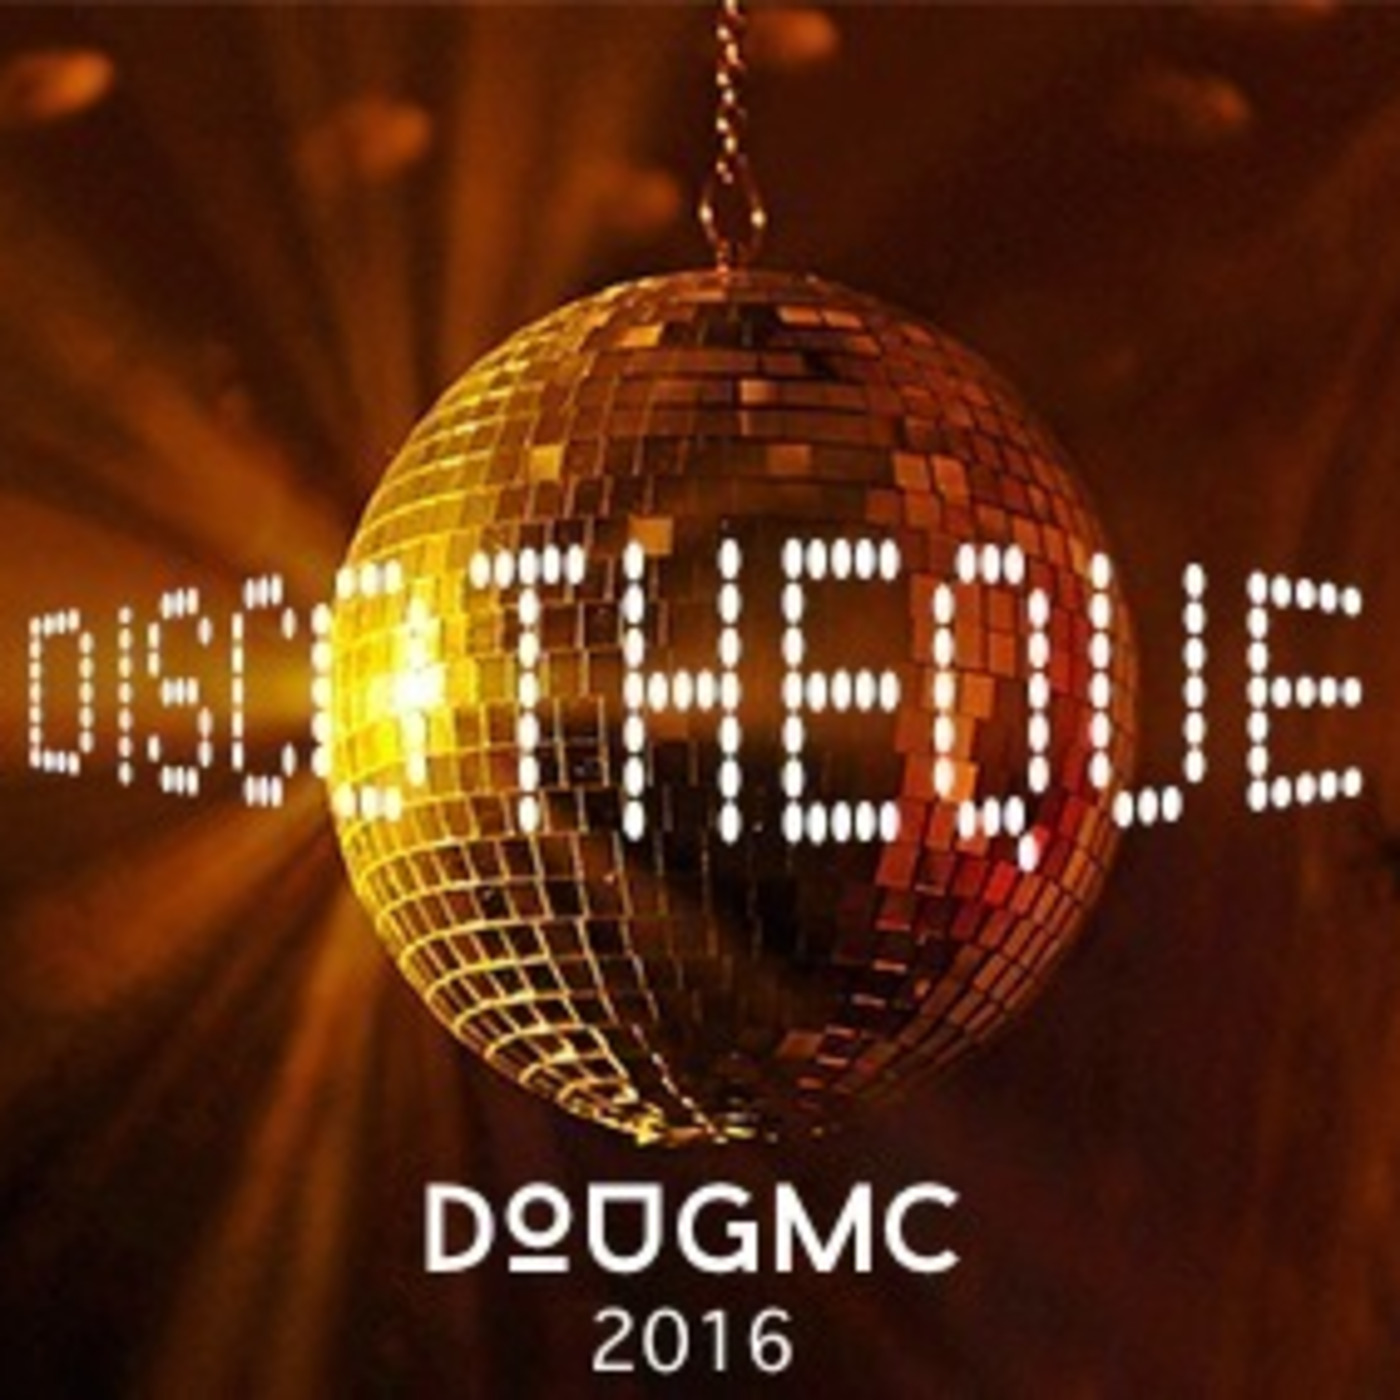 Discotheque 2016 by dougmc